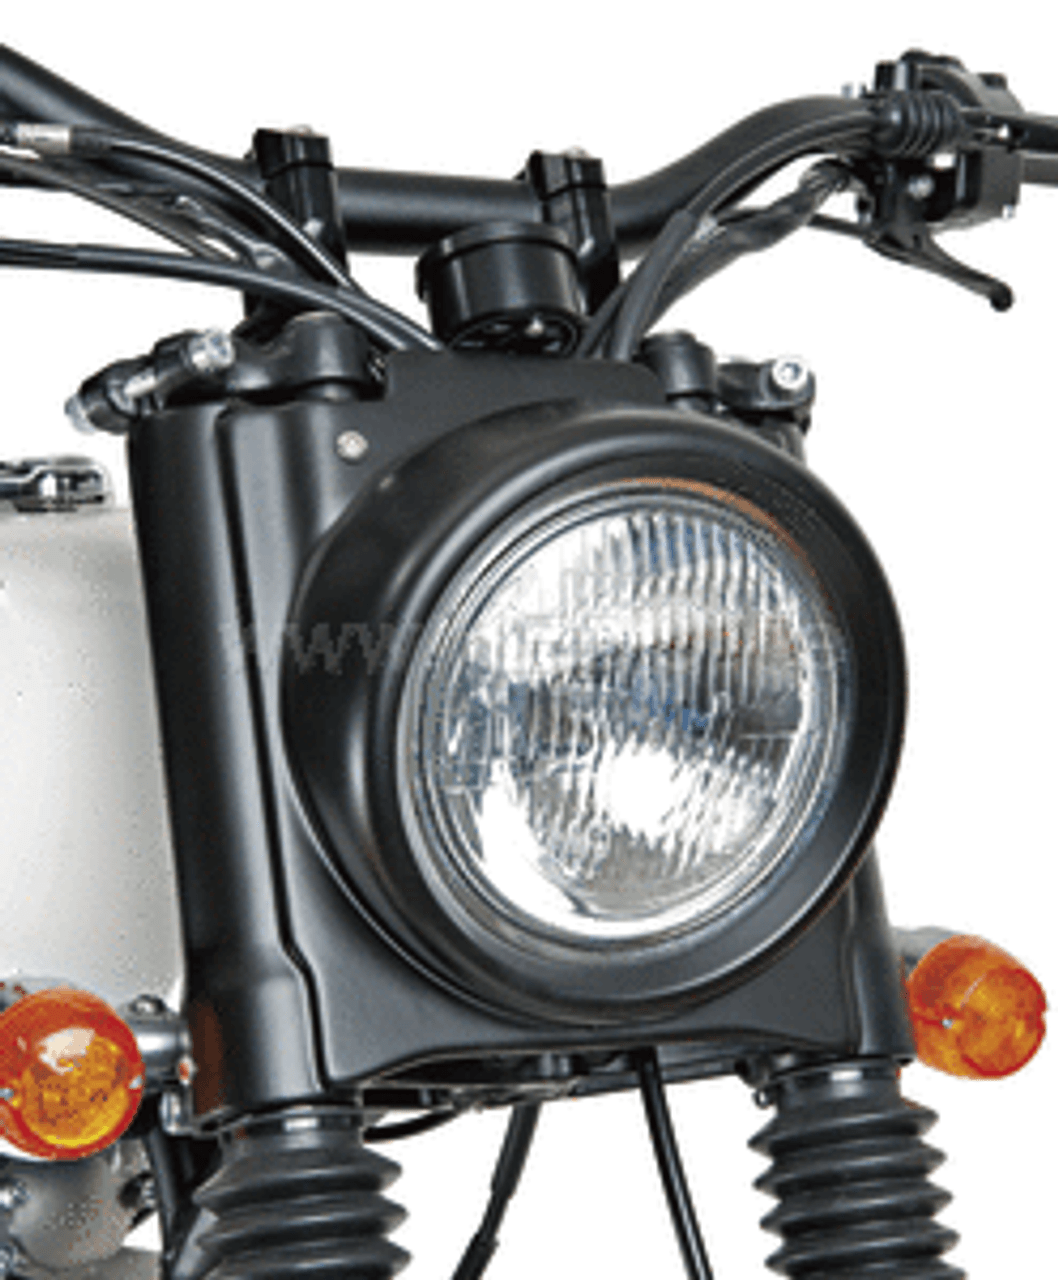 Head Light, Cover GRP JvB-moto SR400 SR500, (unpainted)